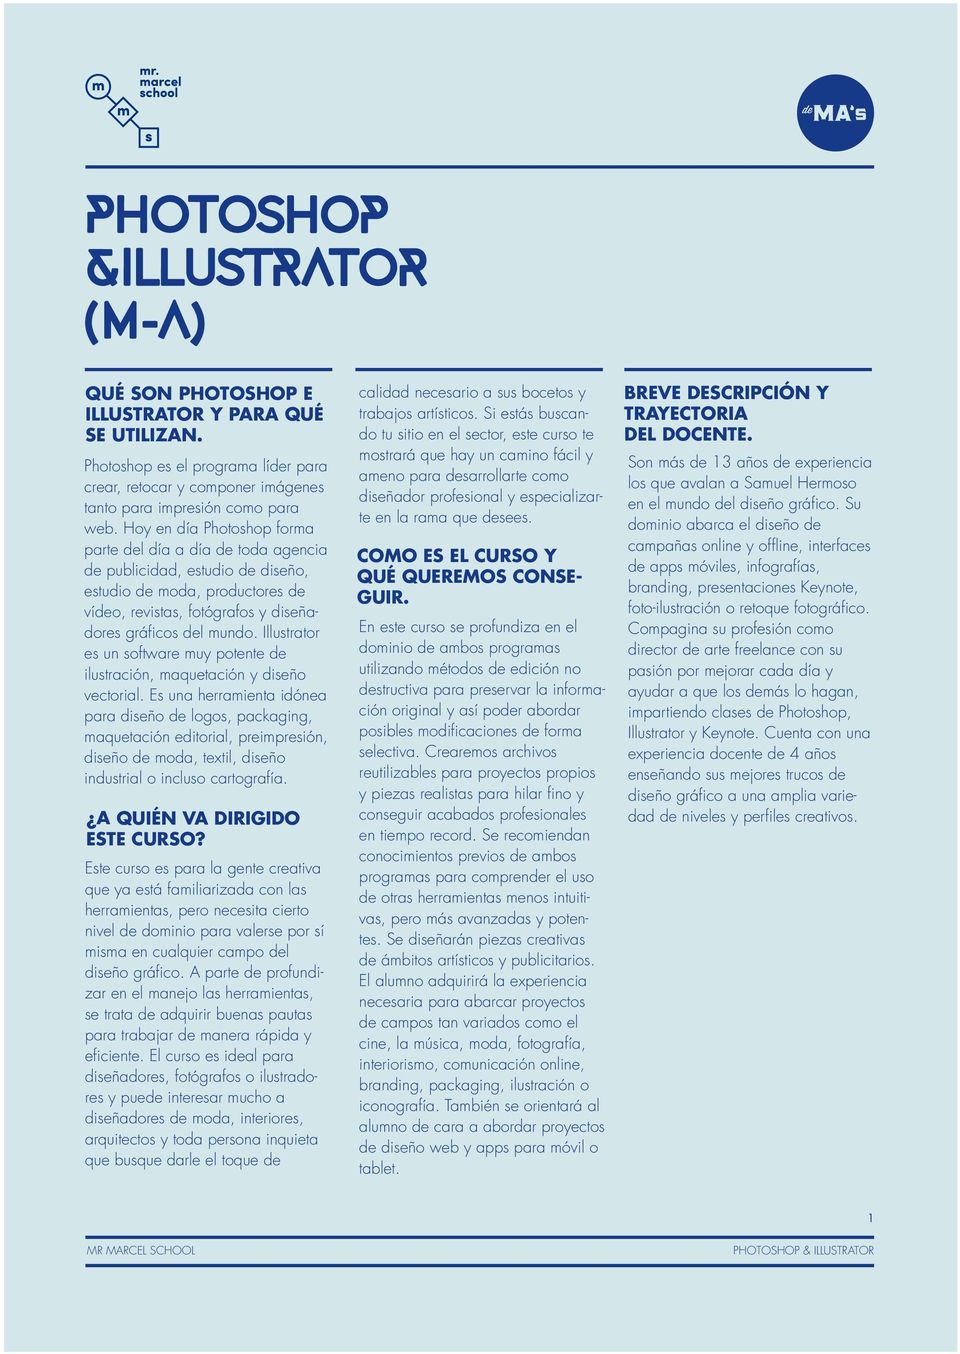 Illustrator es un software muy potente de ilustración, maquetación y diseño vectorial.